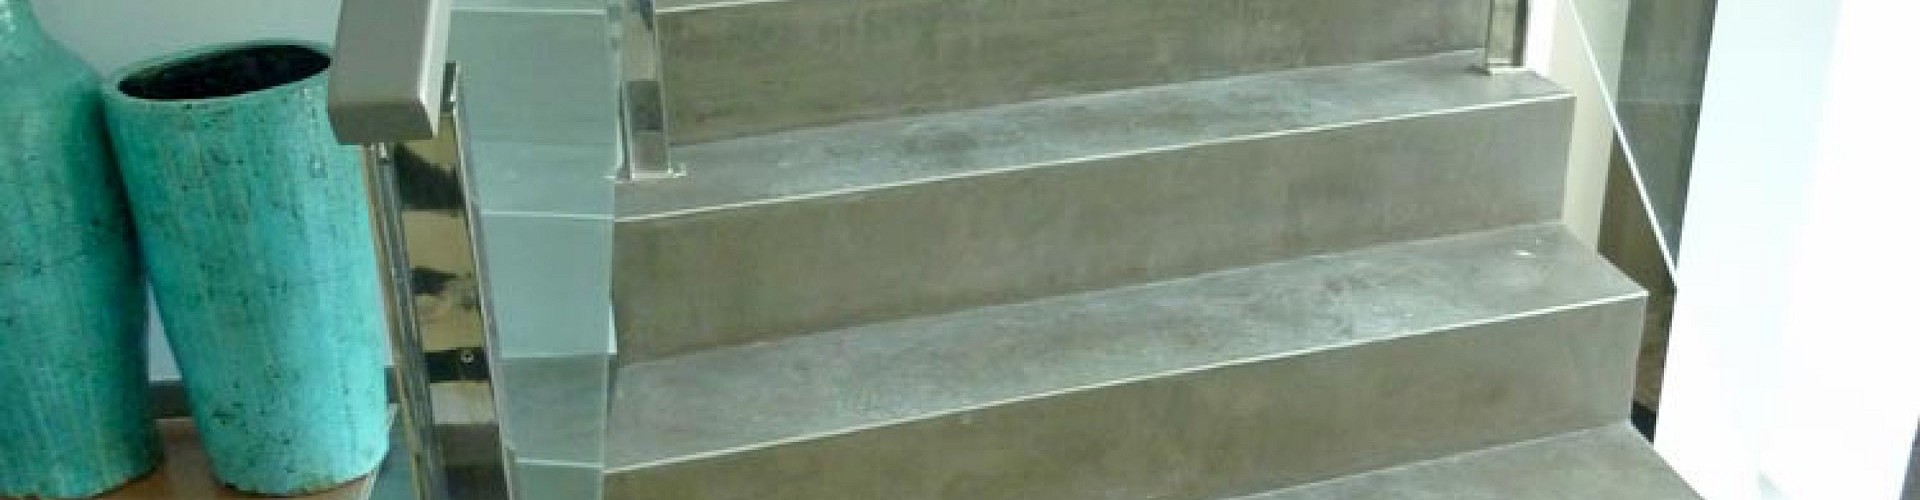 Betonbodentechnik 052--microcemento-escalera--2.jpg